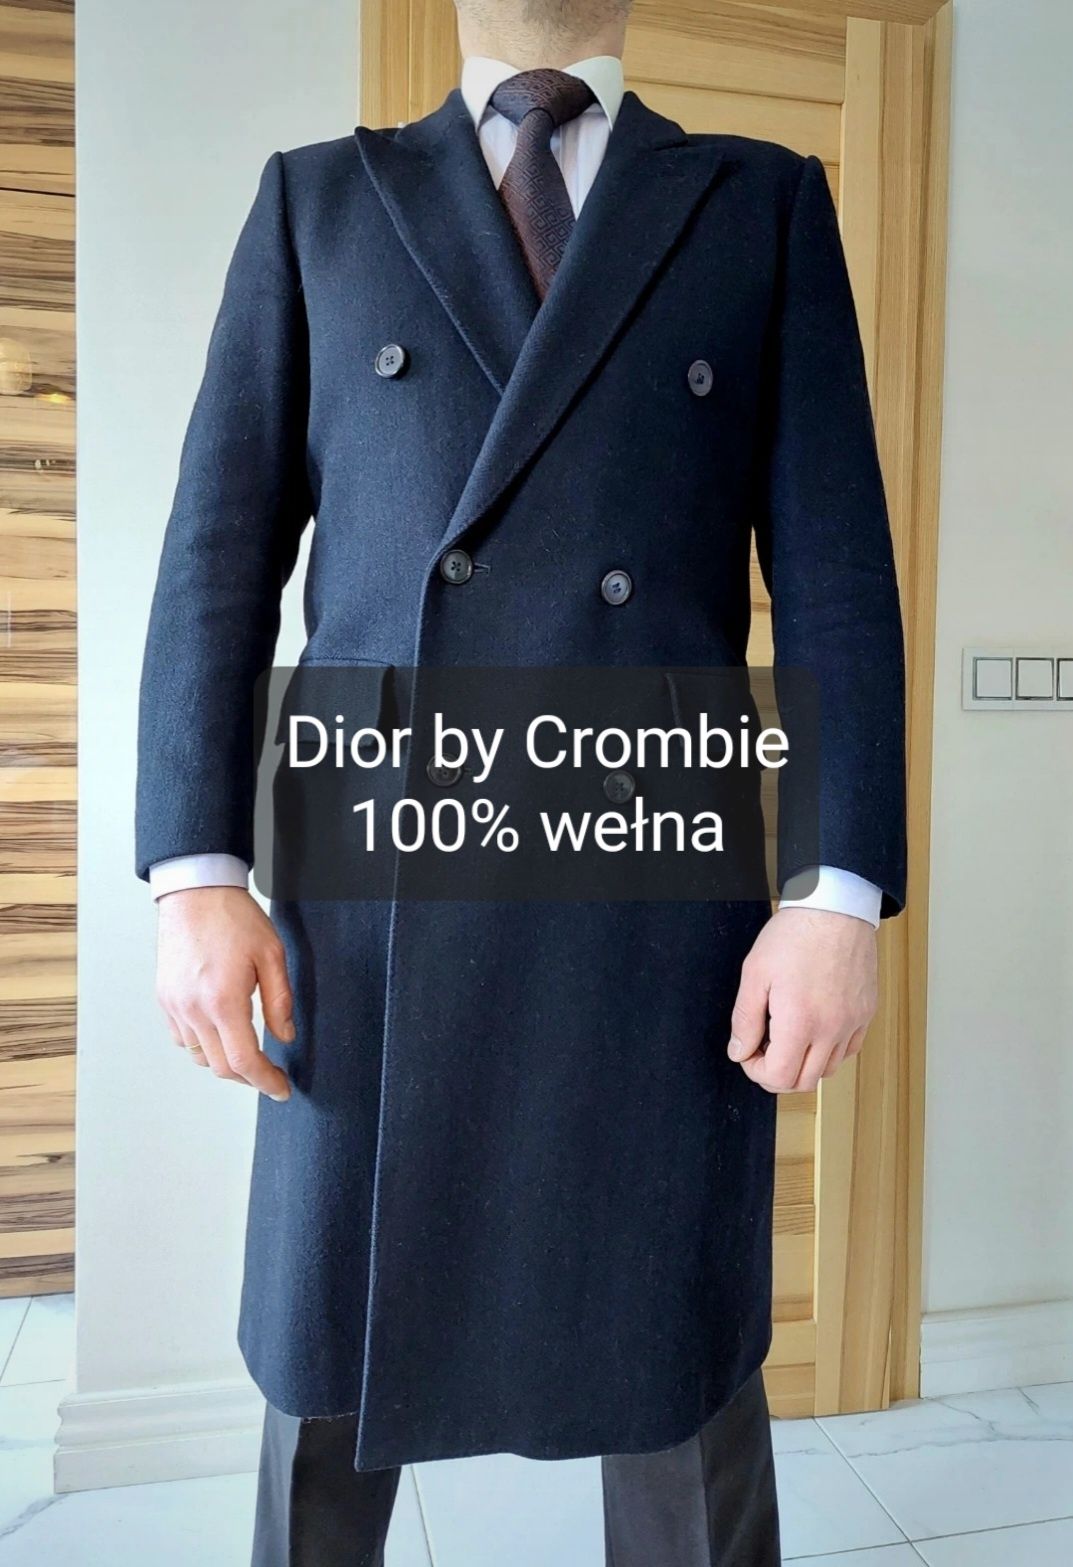 Płaszcz dwurzędowy męski granat 100% wełna Dior by Crombie